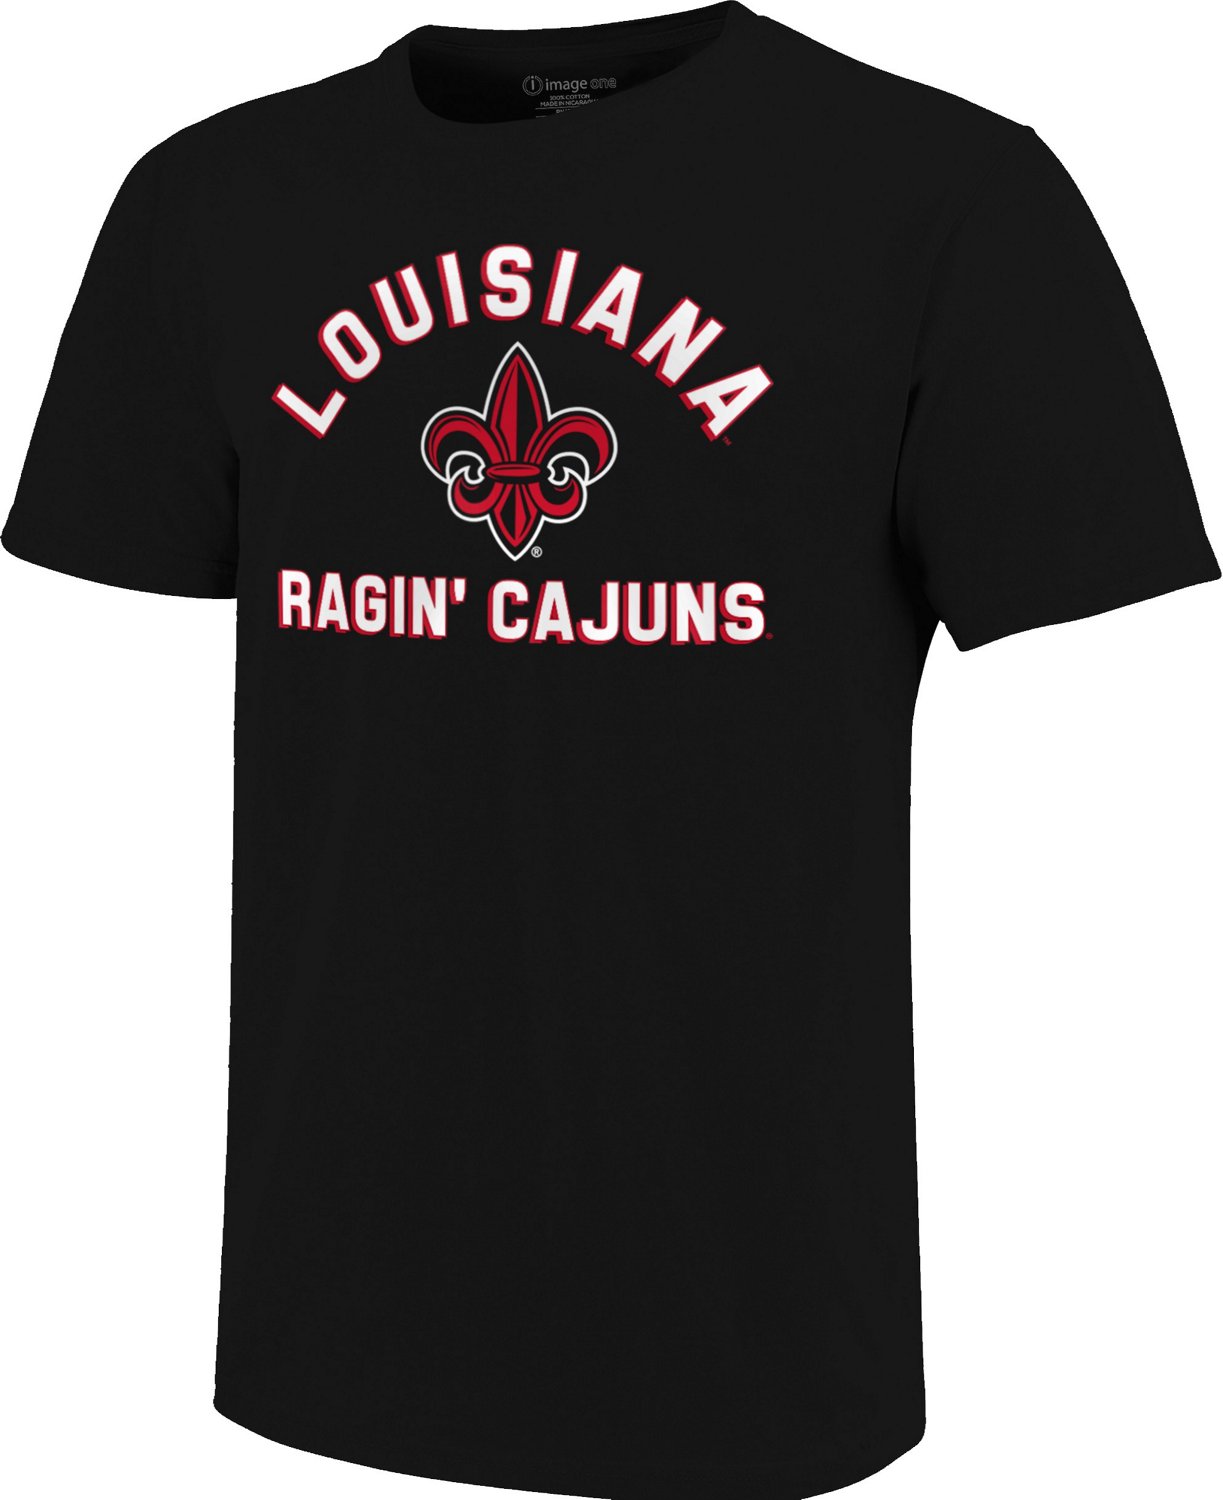 University of Louisiana at Lafayette T-Shirts, University of